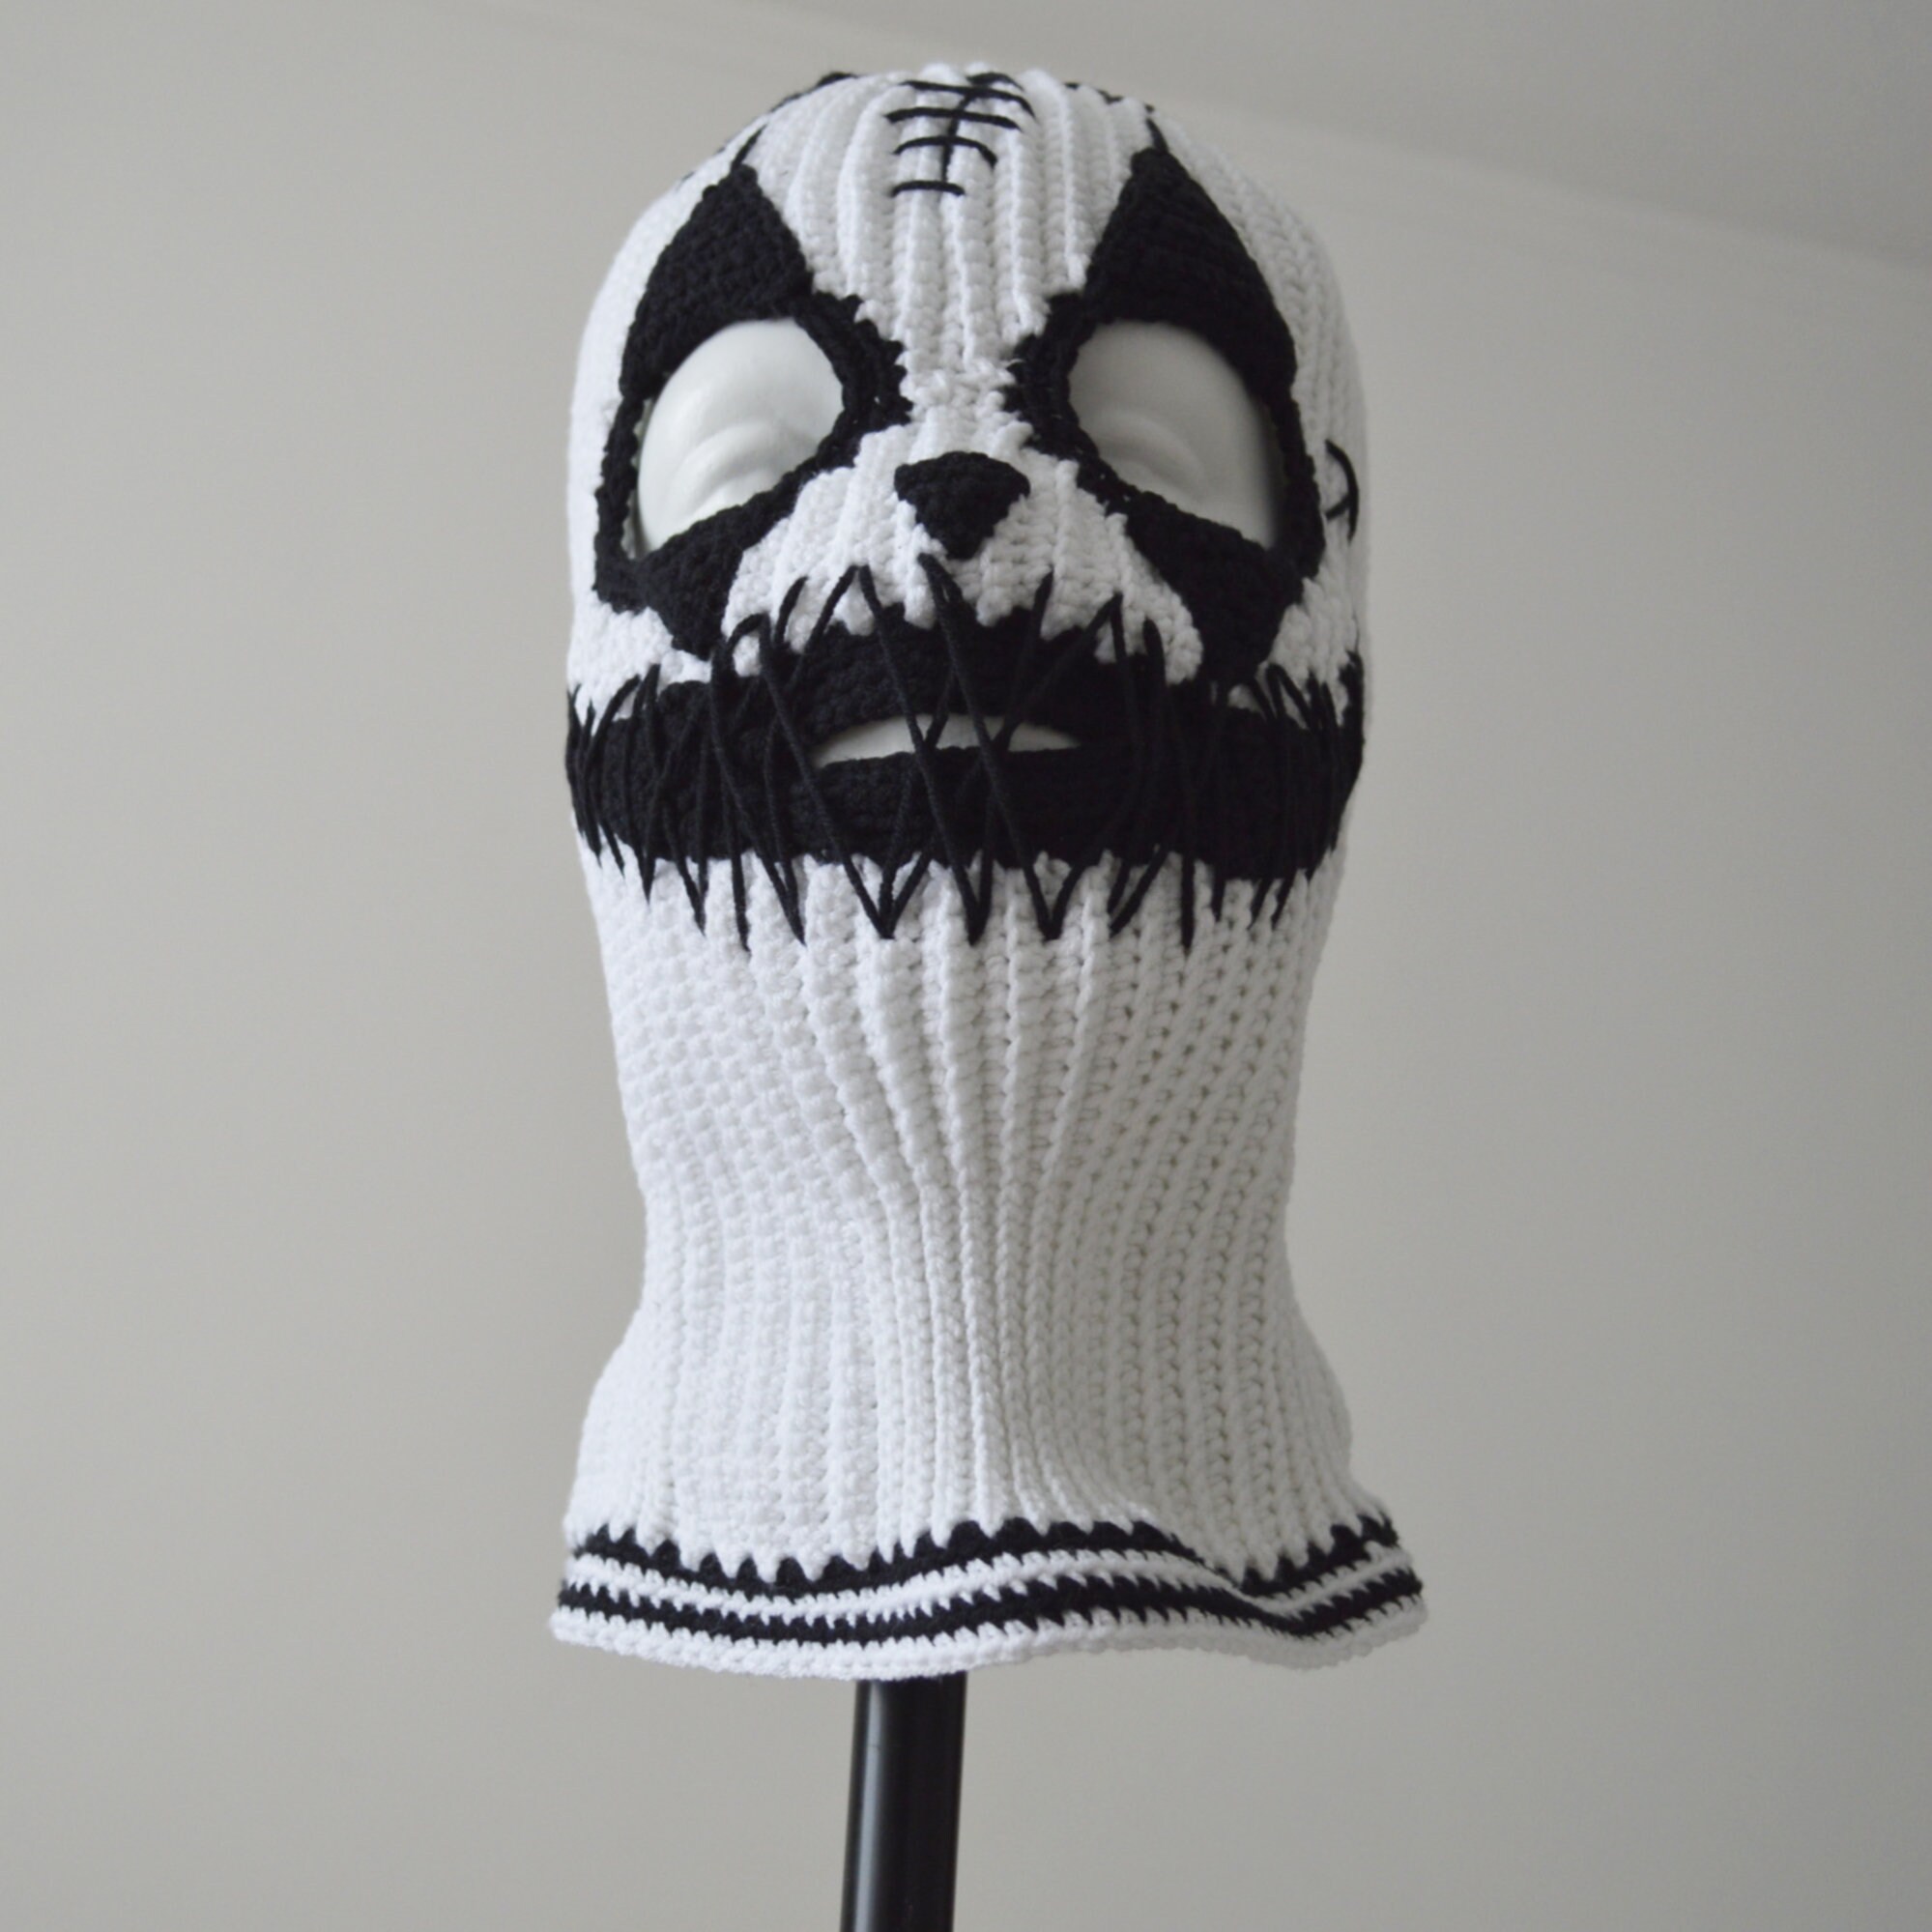 Custom Creepy Black White Face Mask 3 Holes Crochet Ghost - Etsy UK